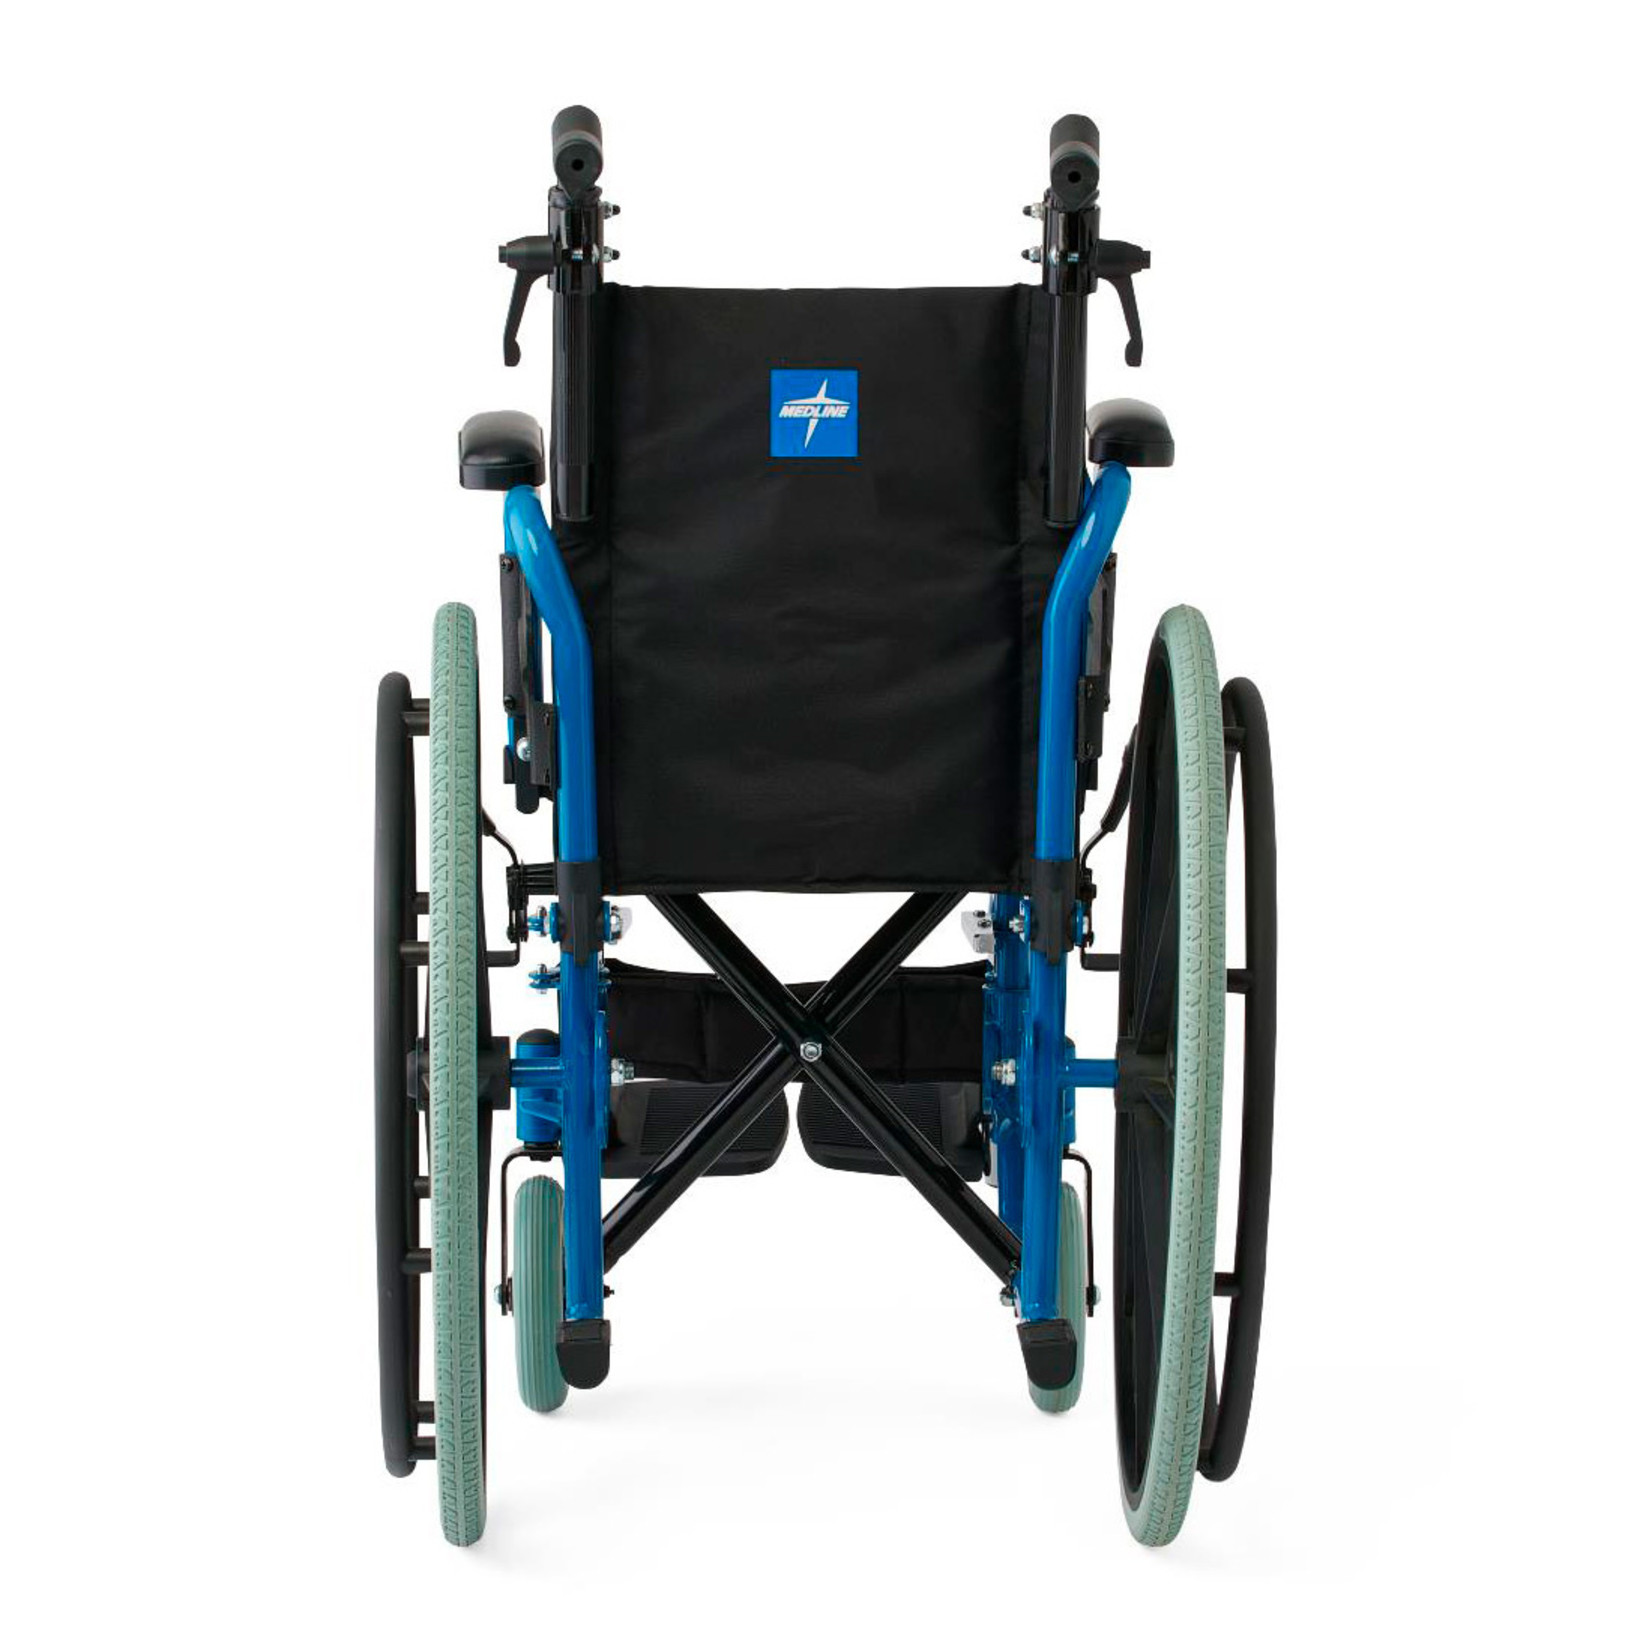 Medline Kidz Pediatric Wheelchair Blue 12 inch seat